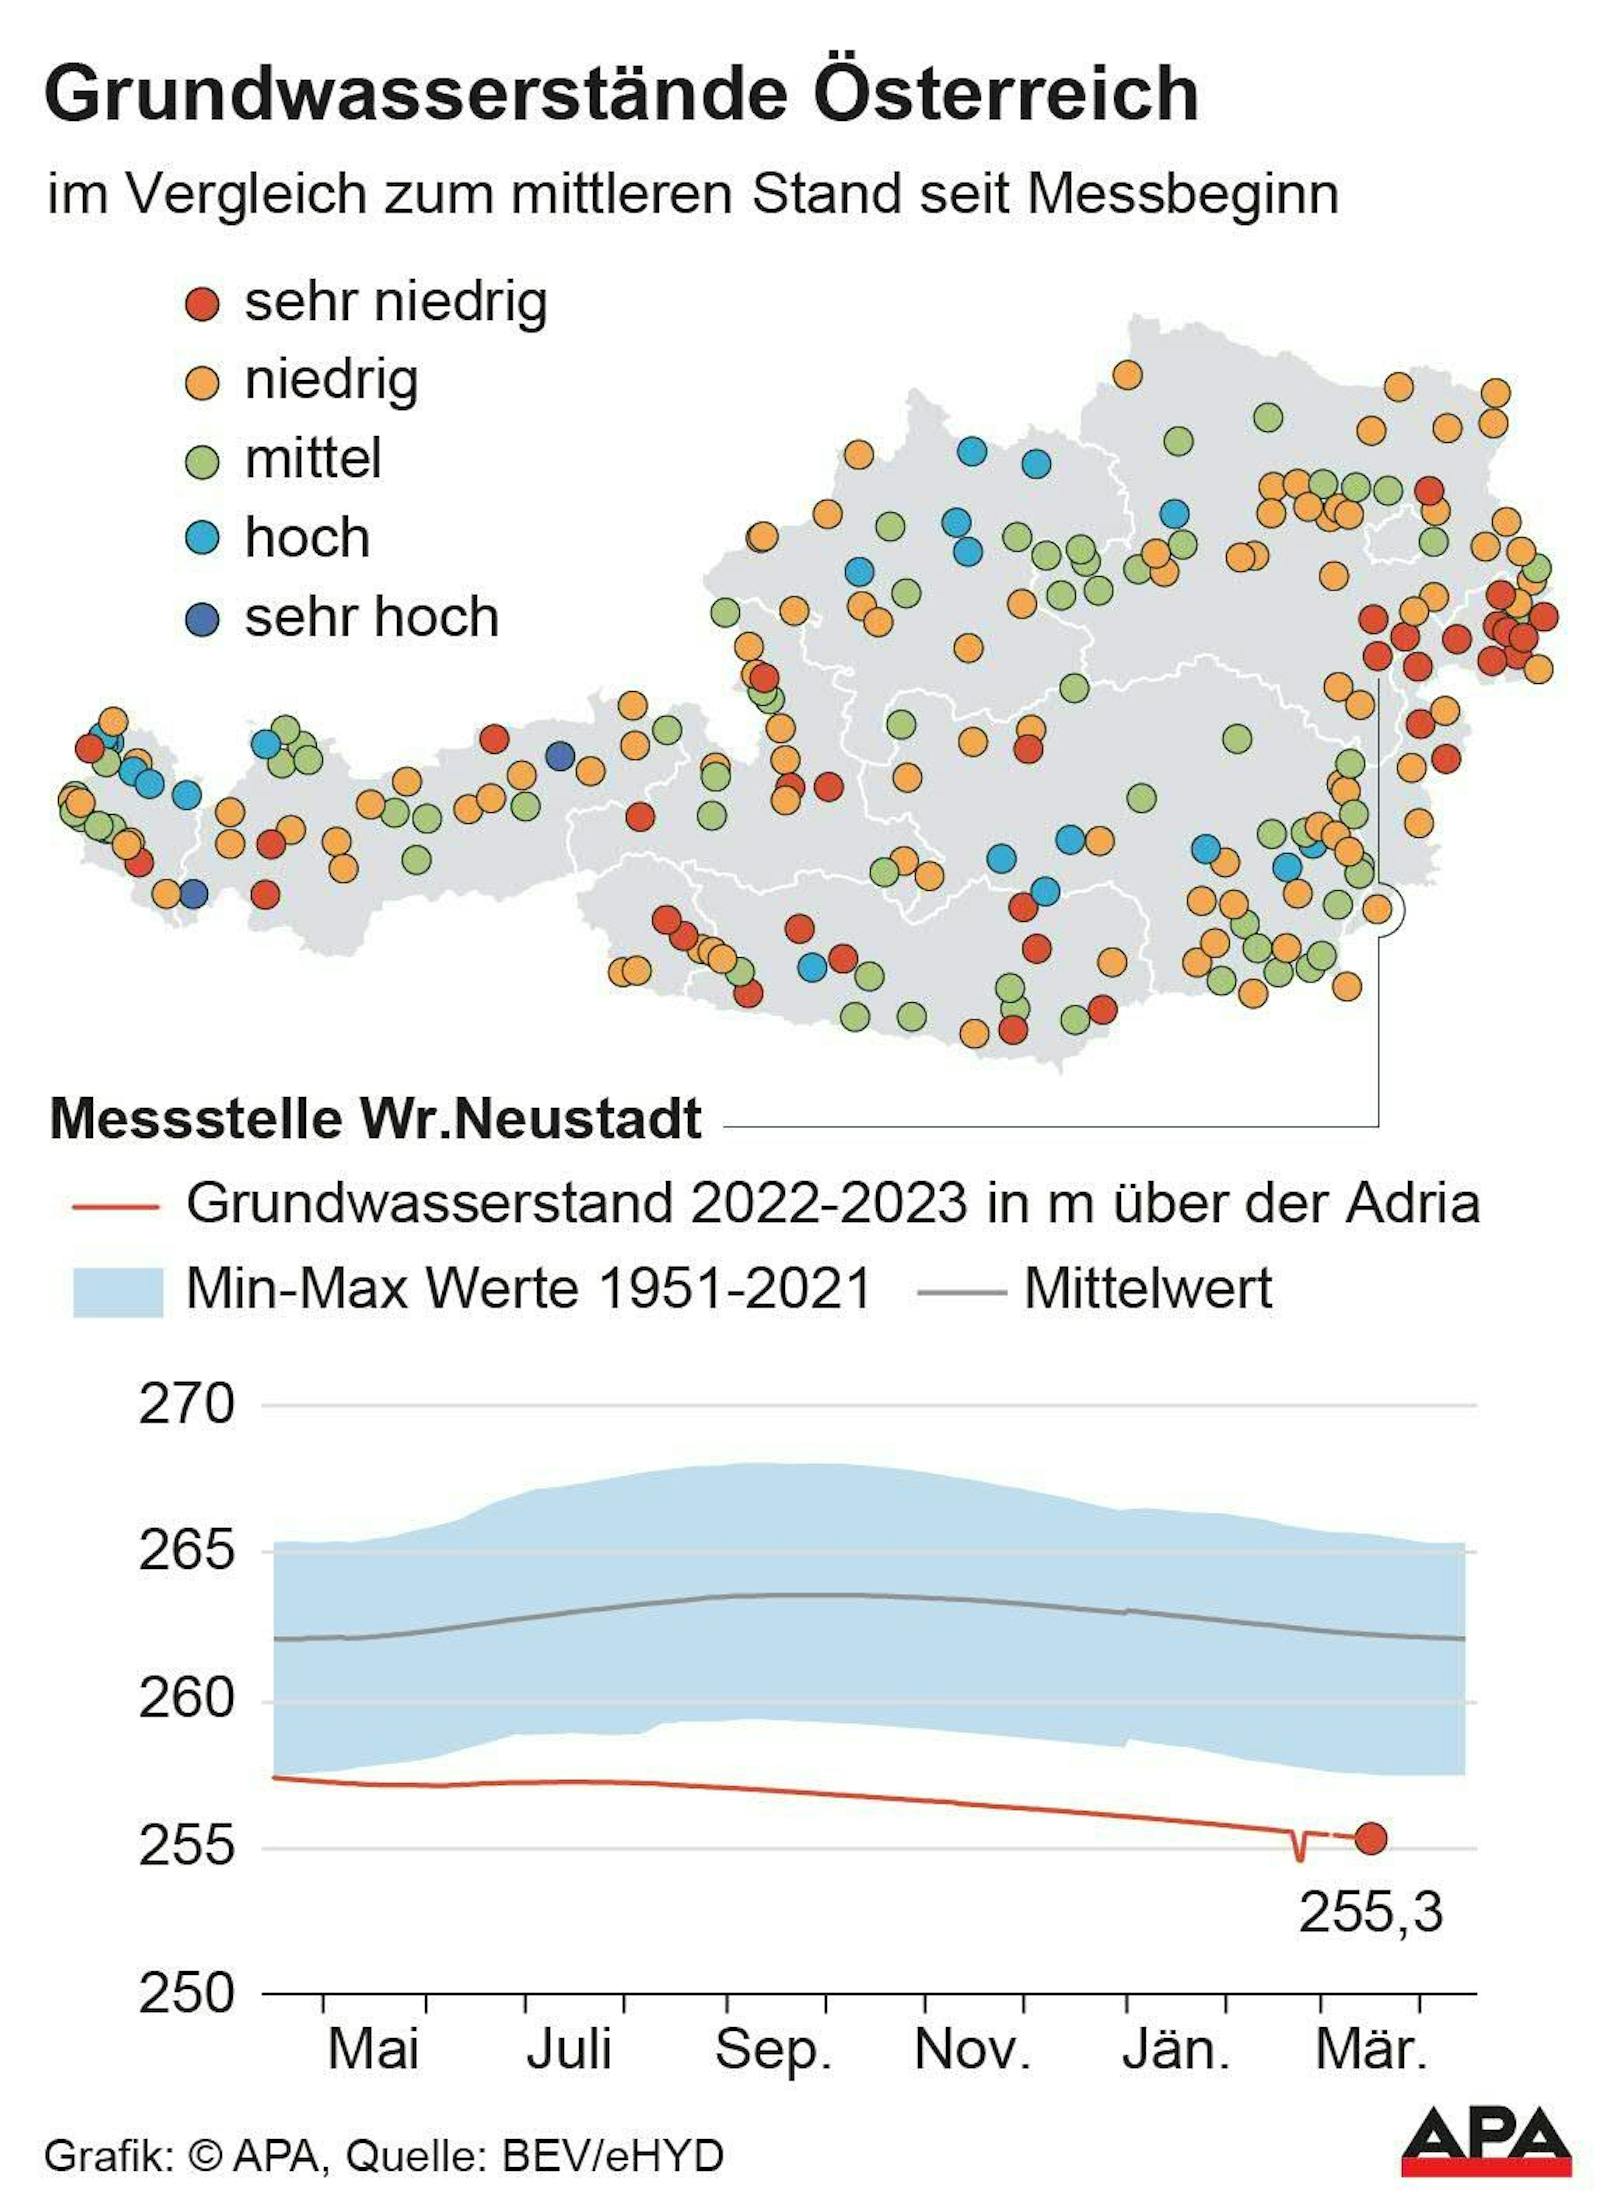 Grundwasserstände in Österreich im März 2023 im Vergleich zum langjährigen Durchschnitt. Unten die Messstelle Wiener Neustadt.